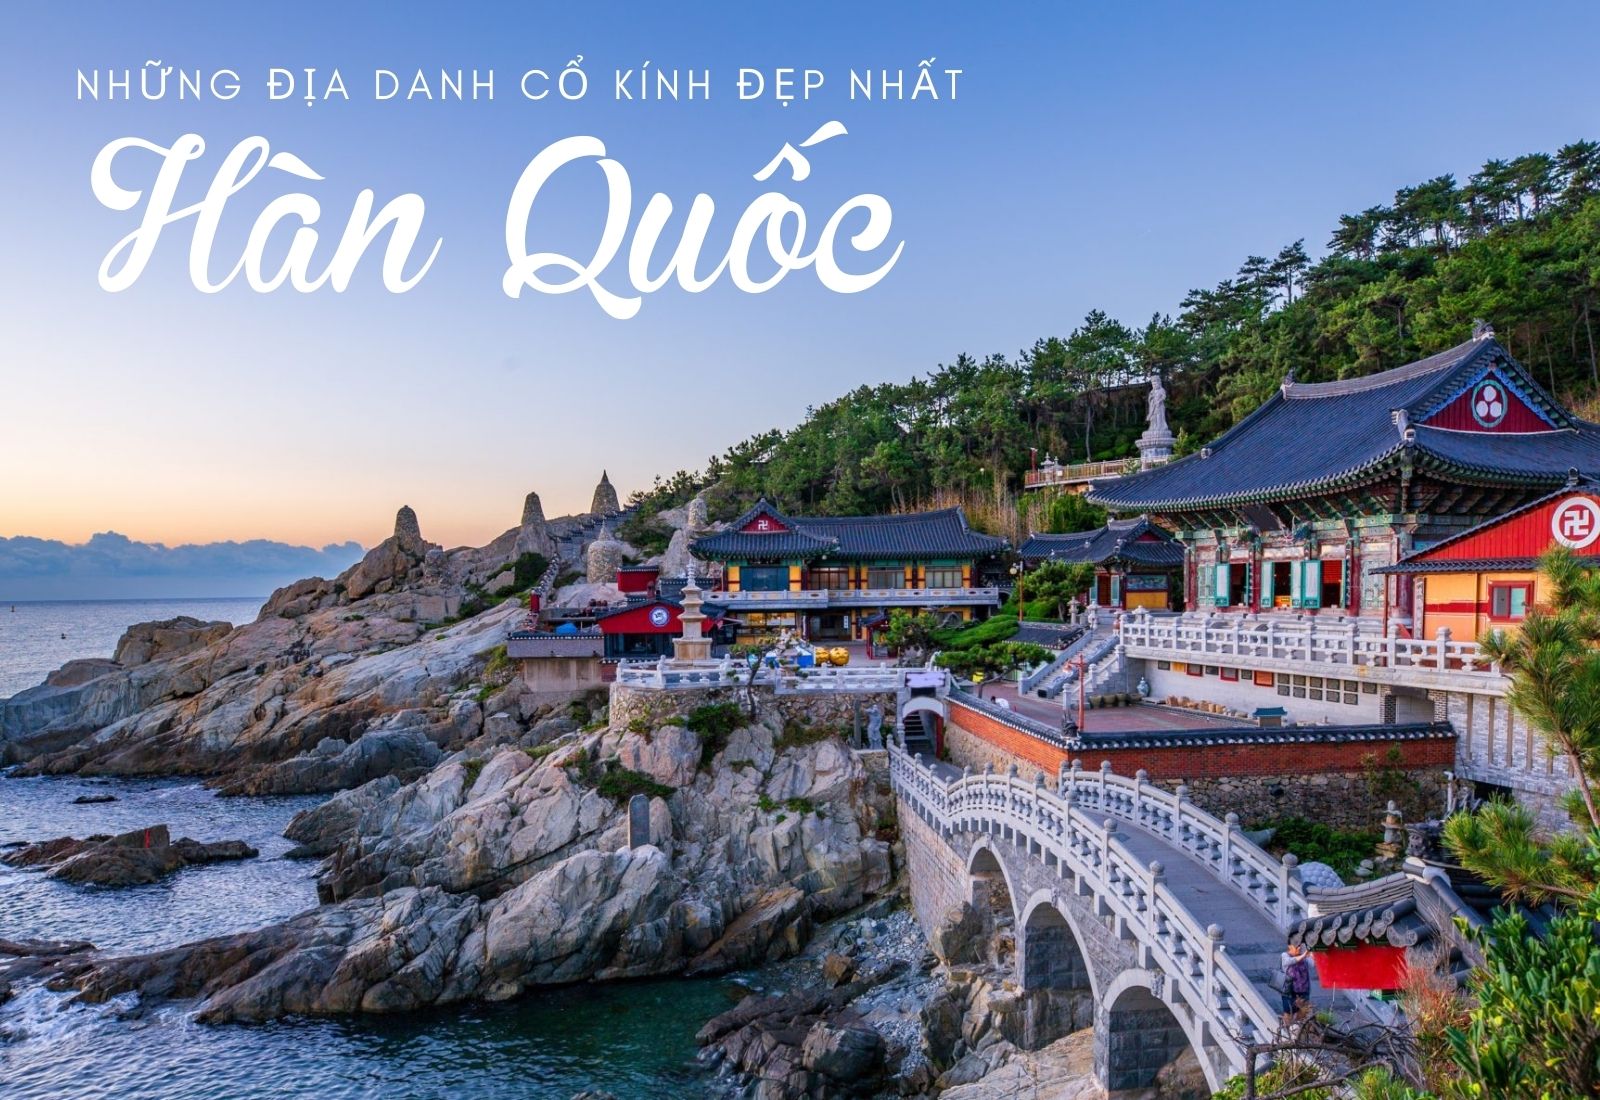 Những địa danh cổ kính đẹp nhất Hàn Quốc bạn đừng nên bỏ lỡ - 1